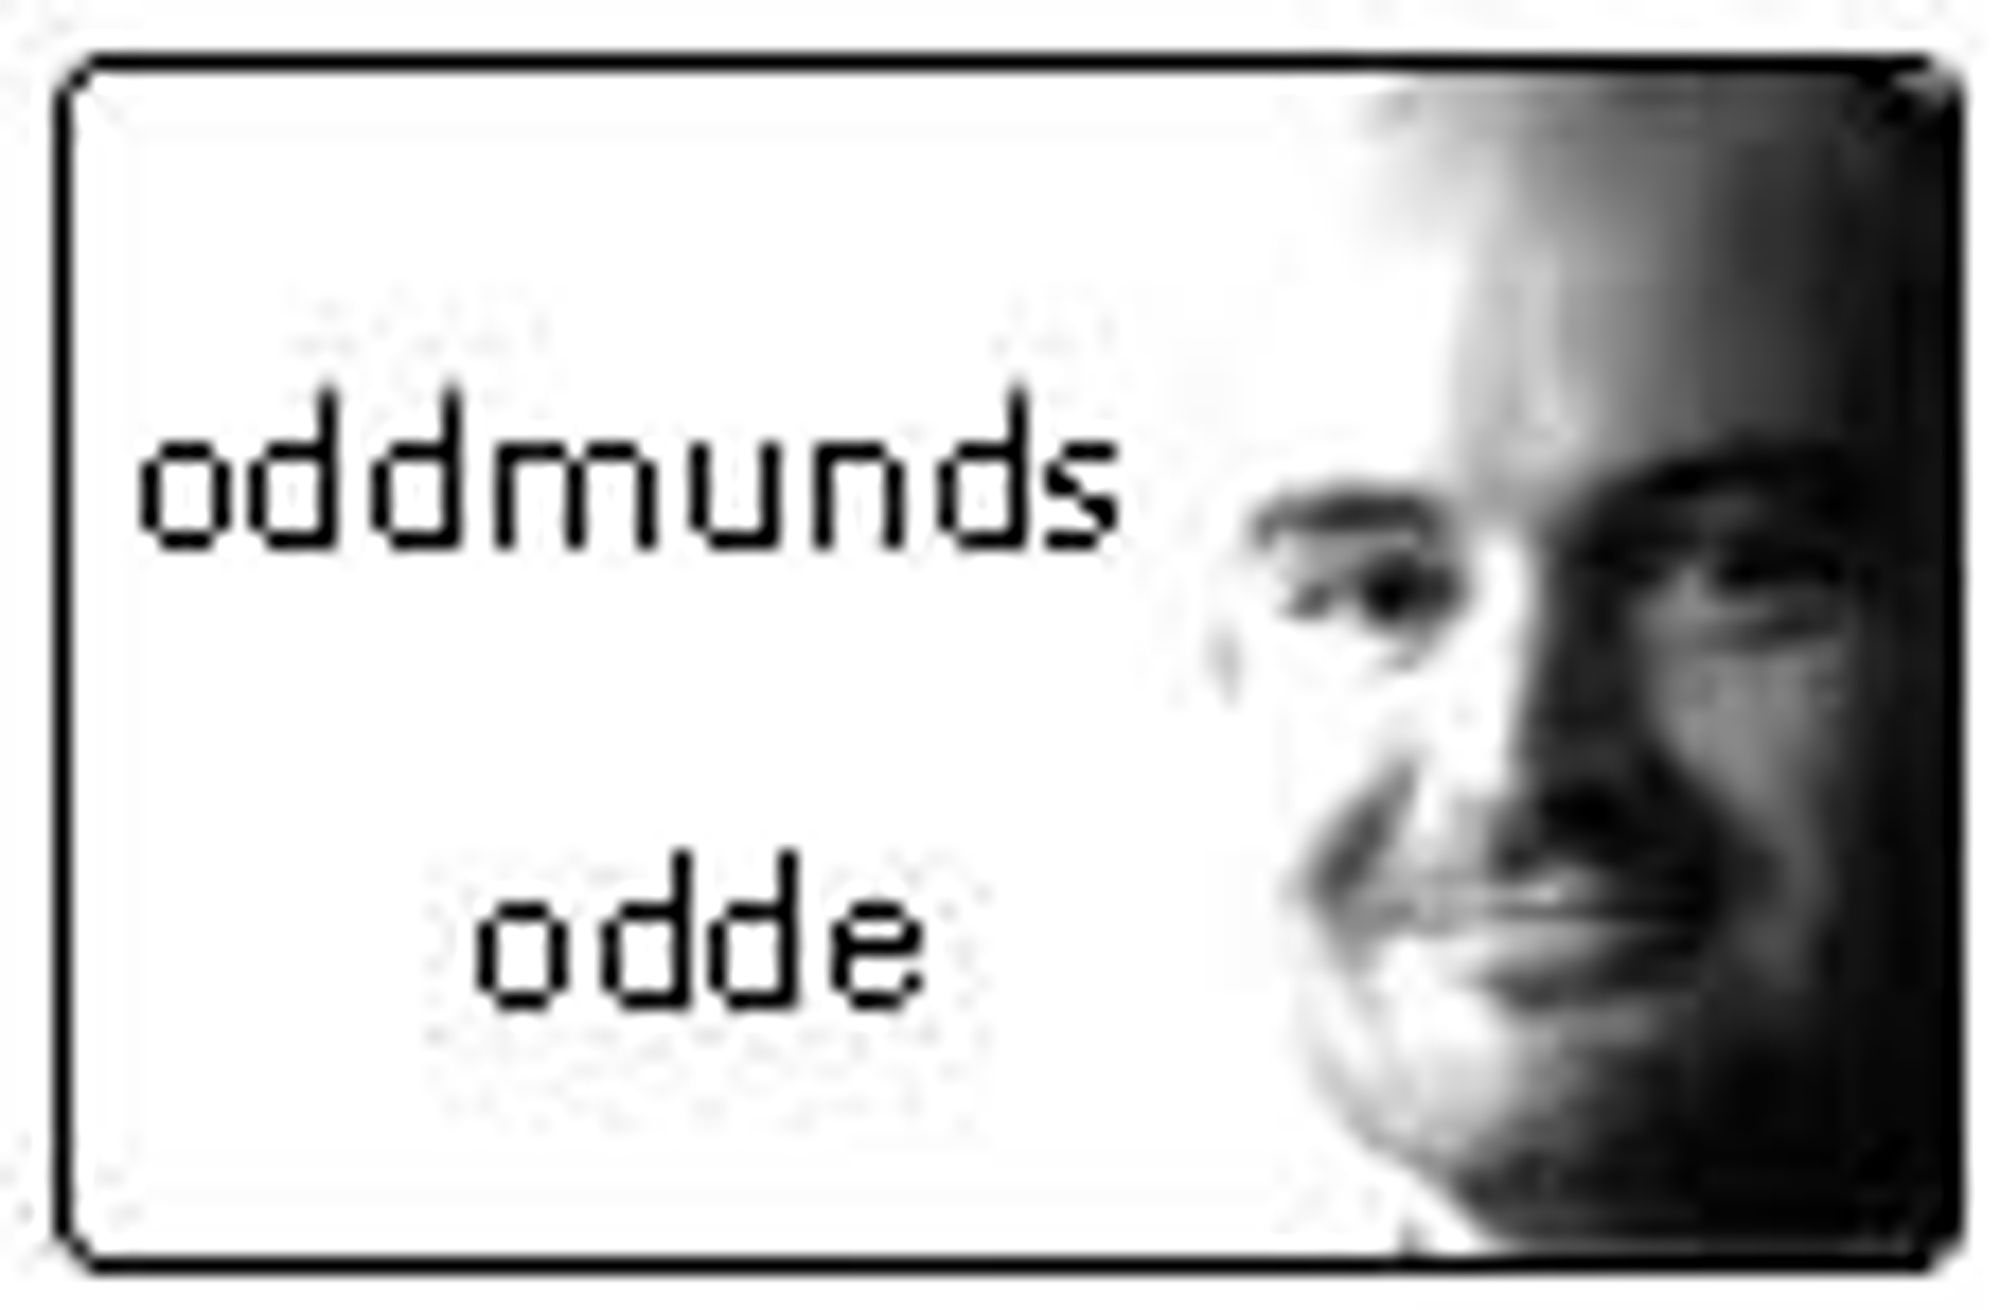 Oddmunds odde. Kommentarvignett for Oddmund Grøtte.